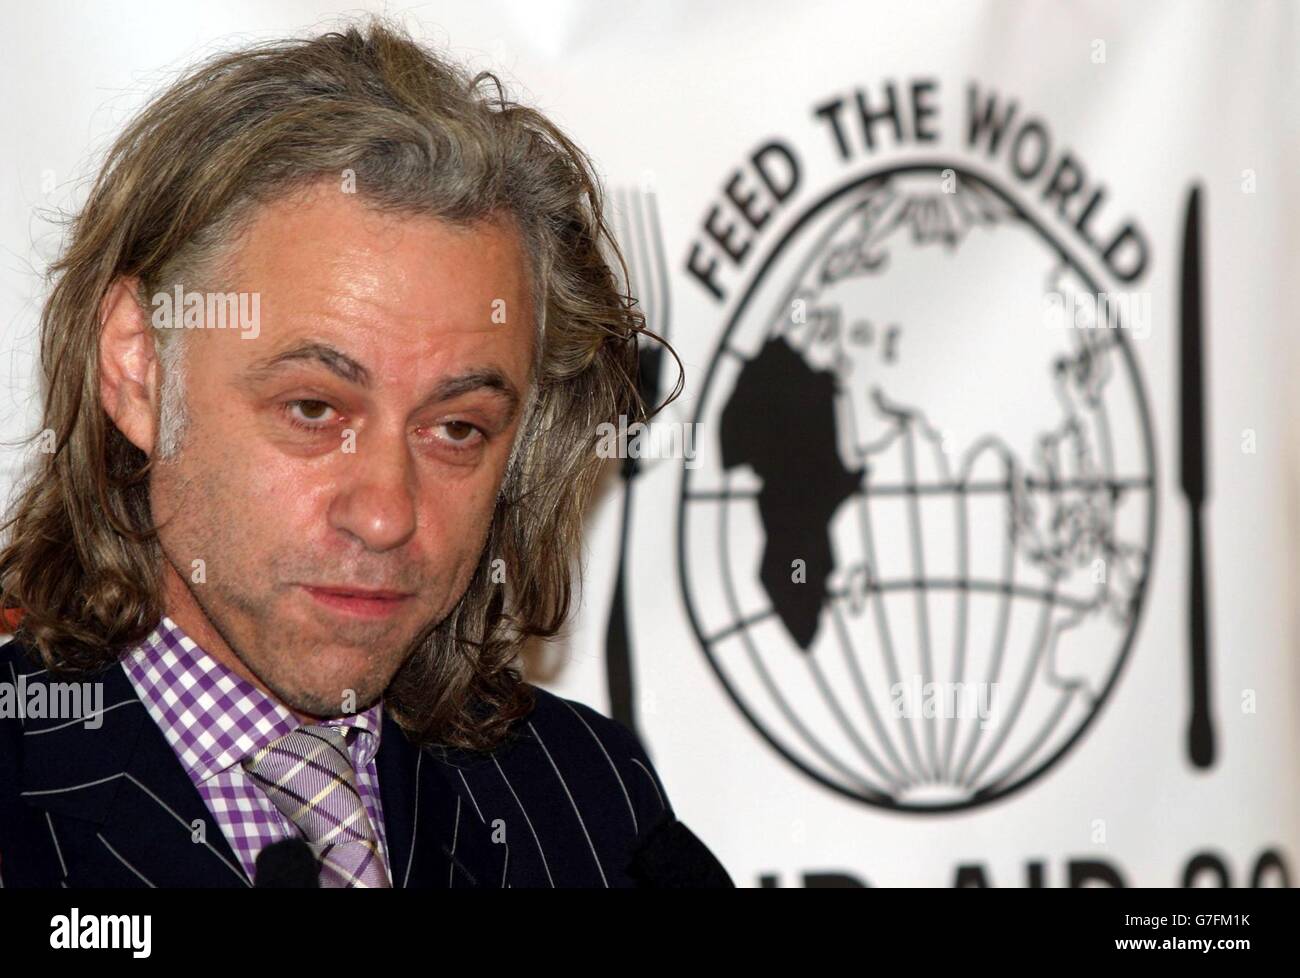 Bob Geldof à New York pour promouvoir le DVD Live Aid. Son apparition a suivi la diffusion en Grande-Bretagne du nouveau single de charité Band Aid 20 pour recueillir de l'argent pour l'Afrique. Banque D'Images